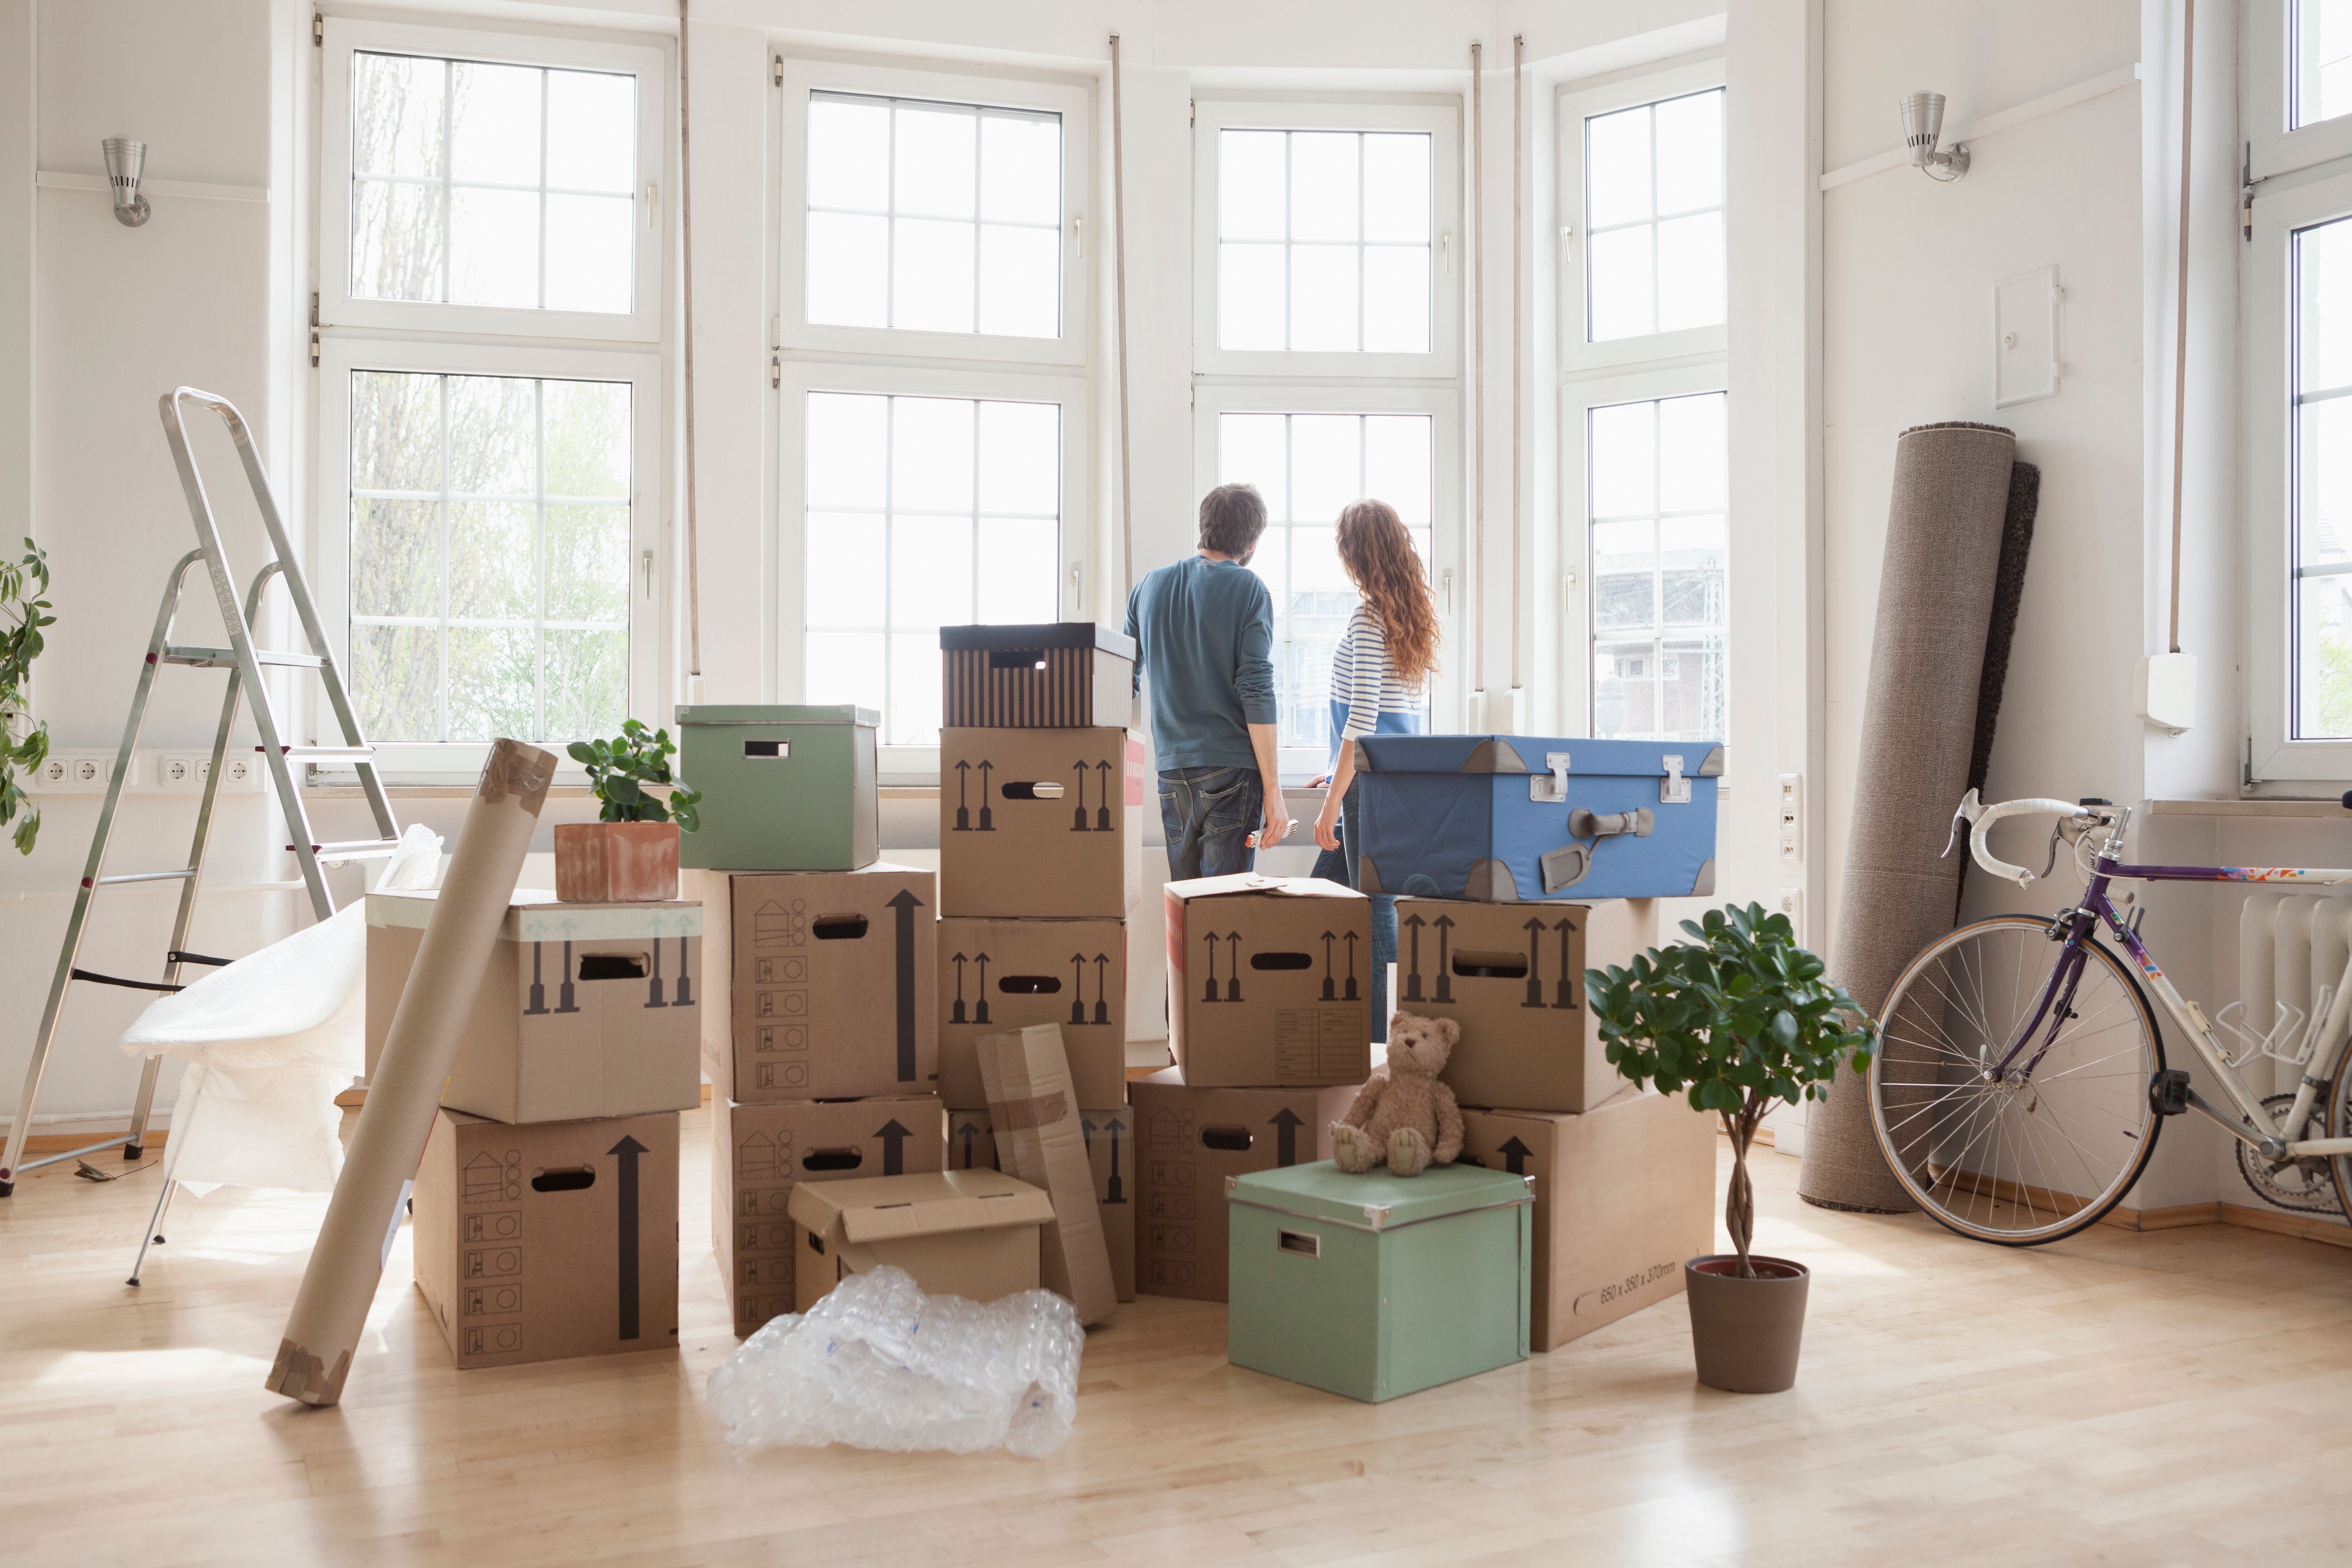 Ein Paar und mehrere Kisten in einem Raum. | Quelle: Getty Images